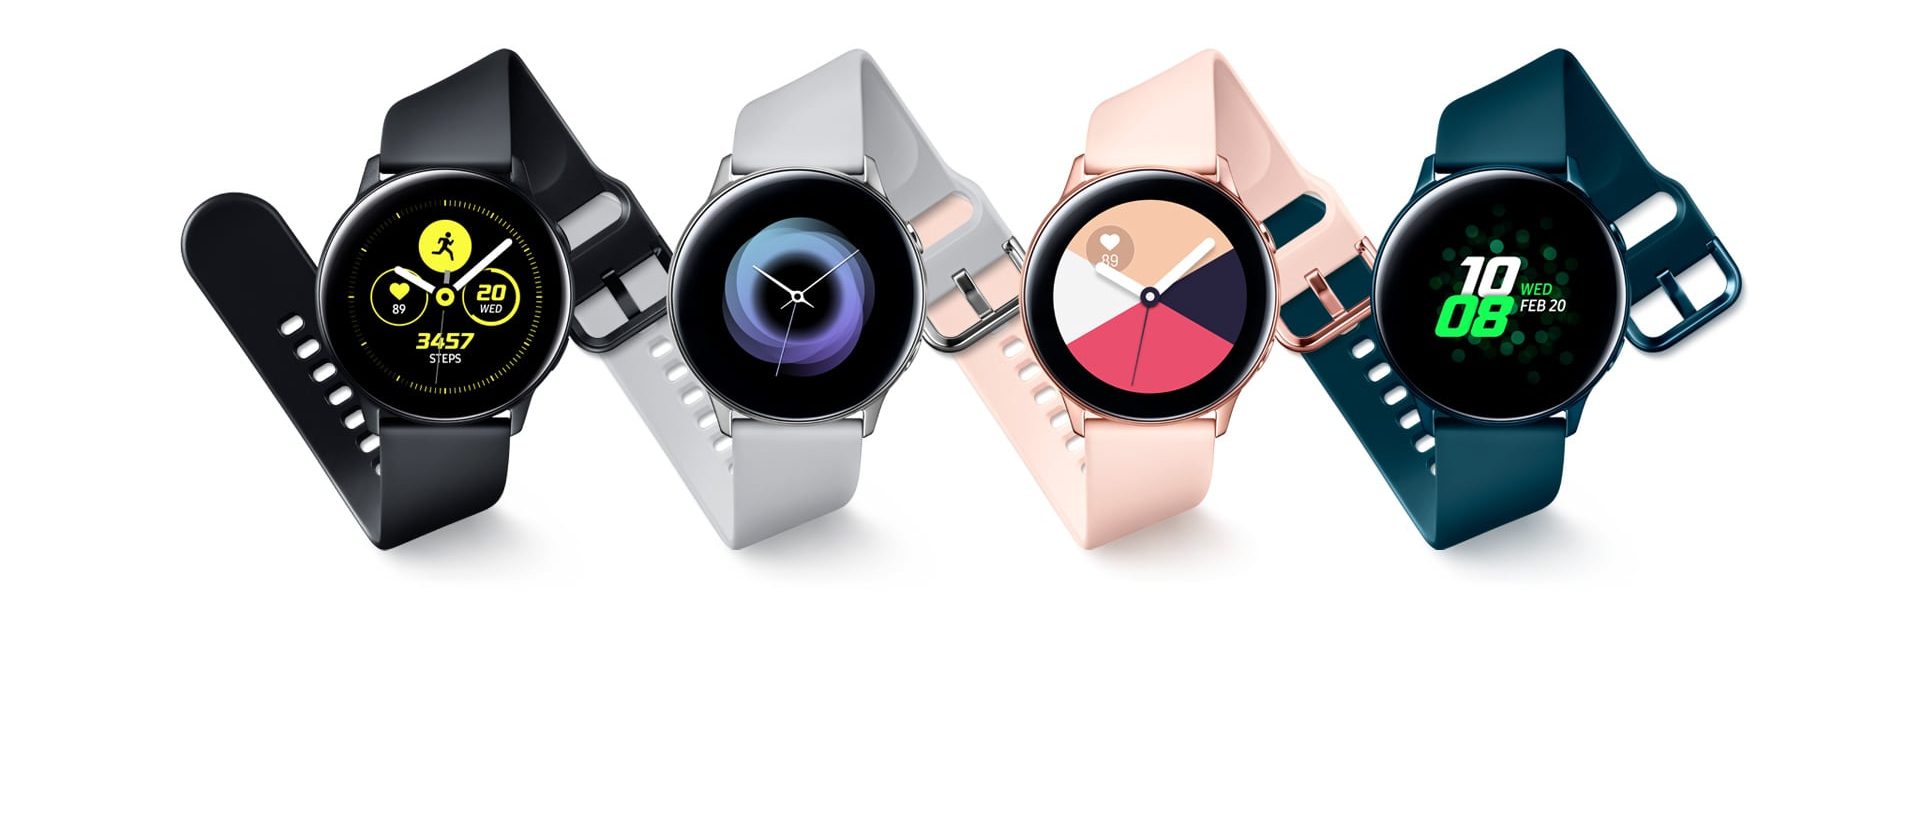 Galaxy watch r500. Samsung watch 2022. Самсунг галакси вотч Актив 1. Смарт часы от самсунг 2022. Galaxy watch серебристые vs черные.